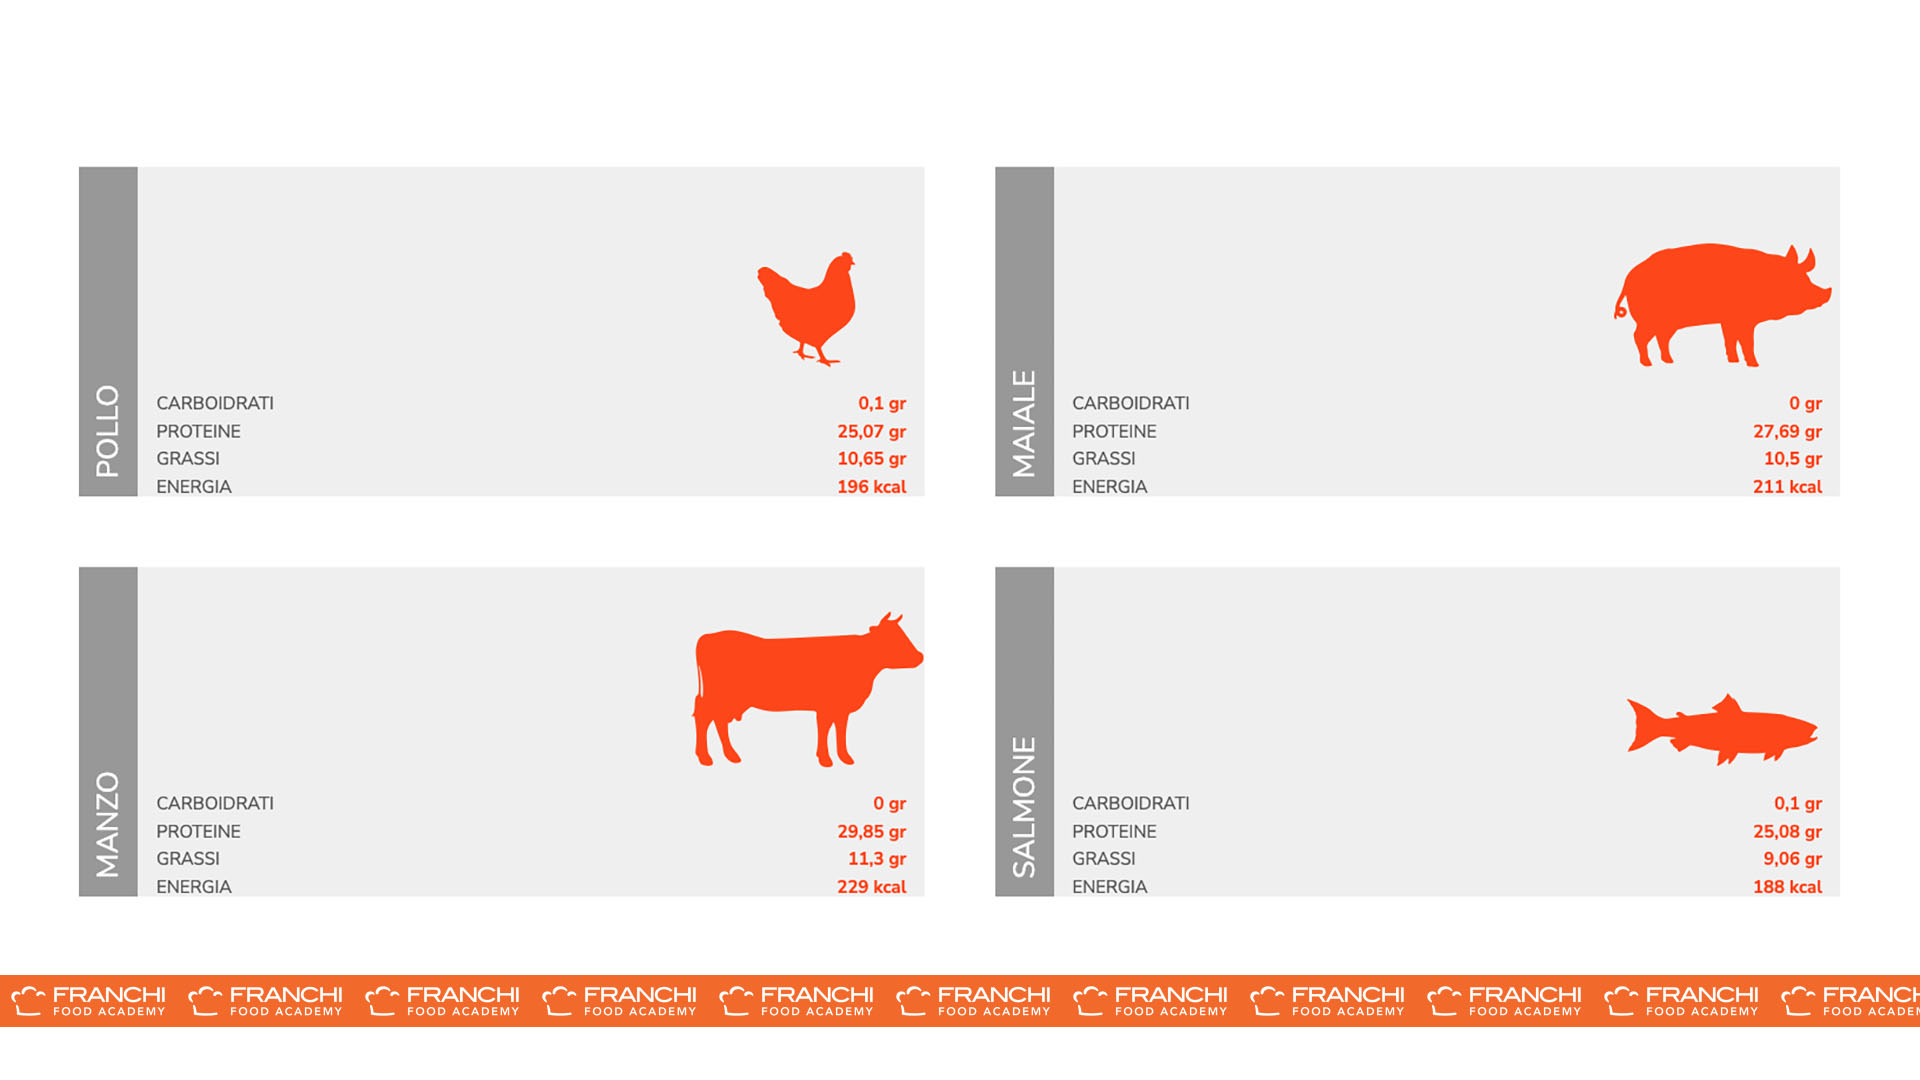 Valori nutrizionali medi per 100 grammi di carne allevata. Fonte: Dipartimento dell'Agricoltura degli Stati Uniti, Servizio di Ricerca Agricola / Franchi Food Academy